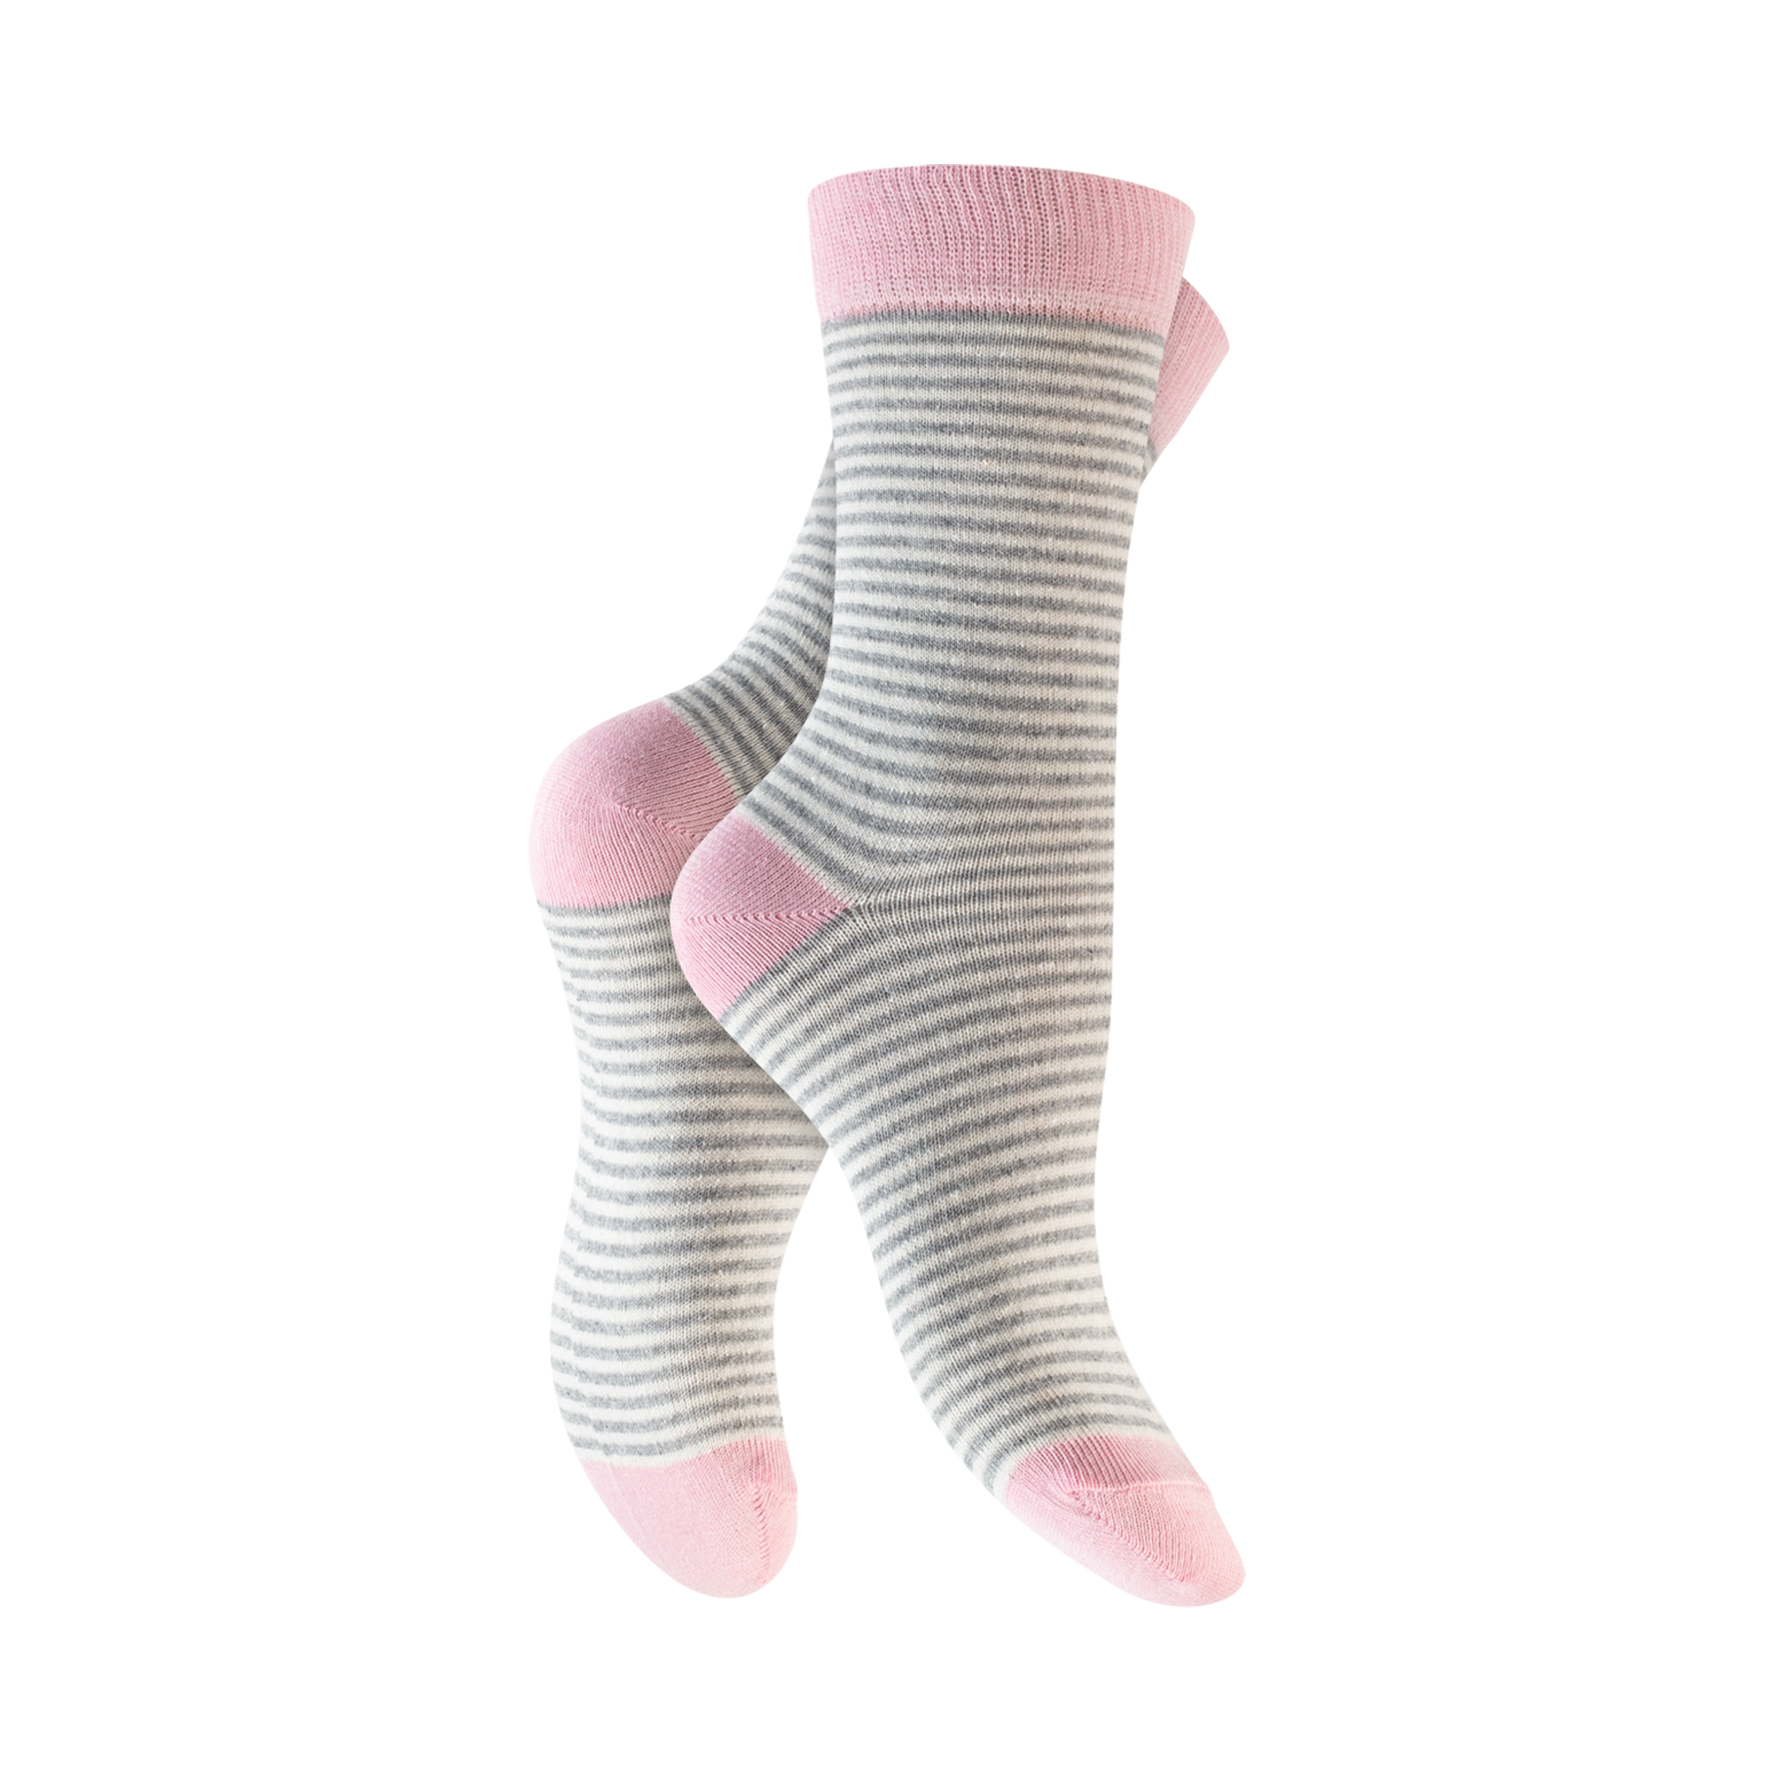 Damen Socken 5er-Pack BW/EL versch. Designs